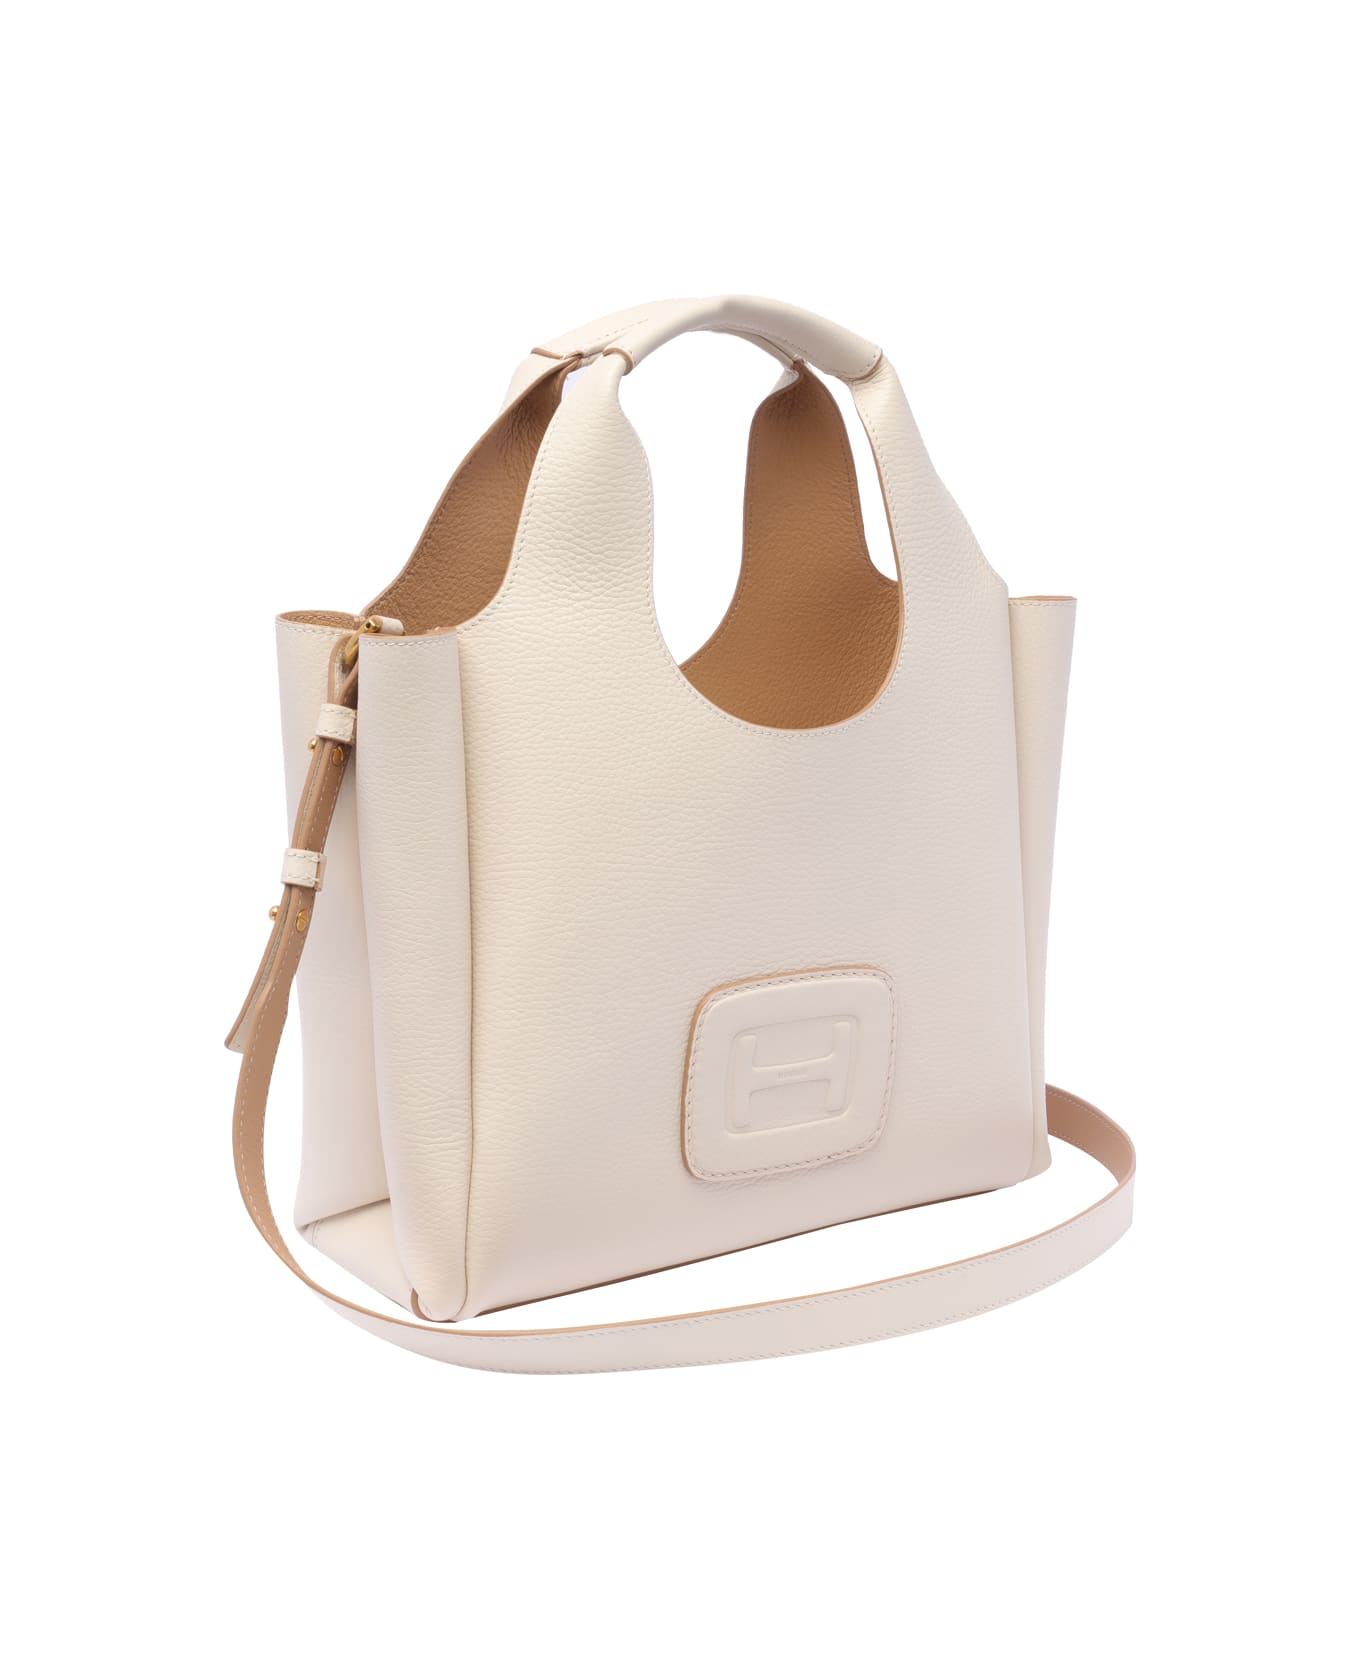 Hogan Small H-bag Shopping Bag - Avorio